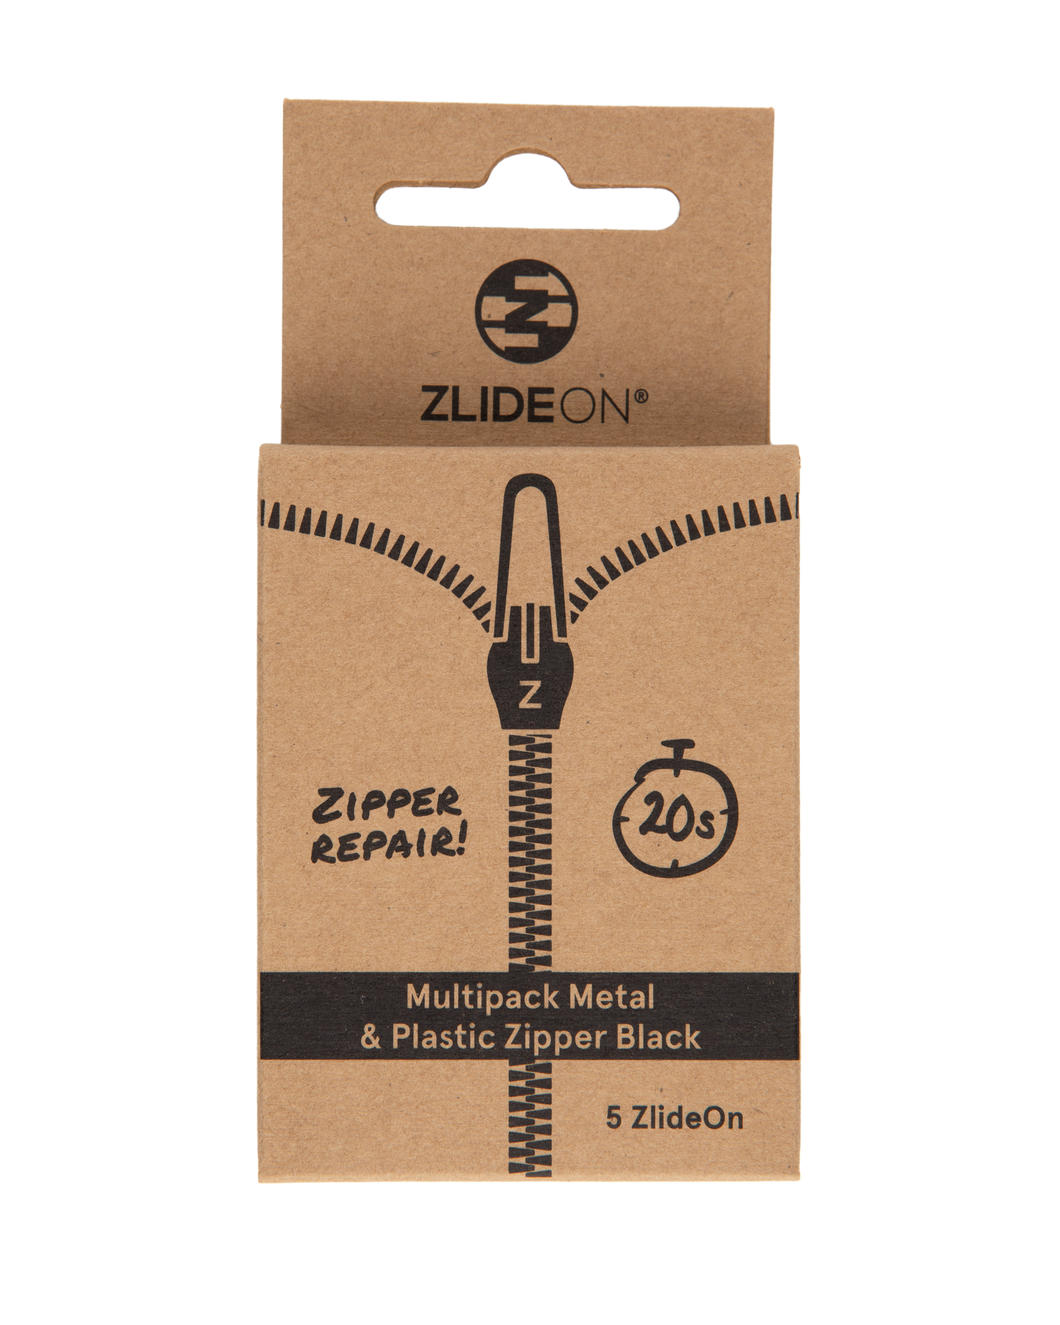 Multipack Metal & Plastic Zipper